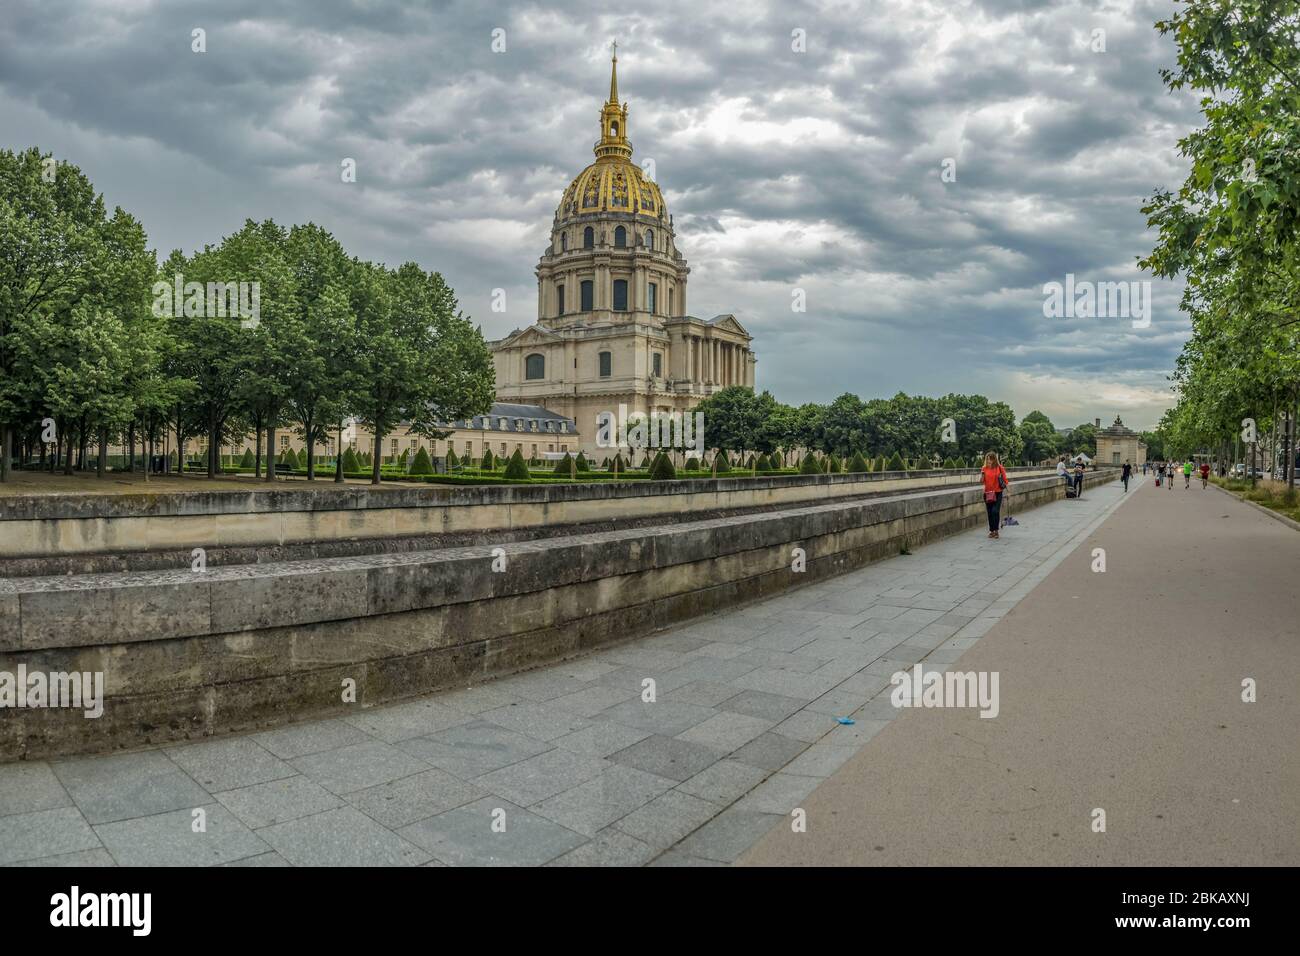 Parigi, Francia - 22 giugno 2016: Les Invalides è un complesso di musei a Parigi, il museo di storia militare della Francia, e la tomba di Napoleone Bonapar Foto Stock